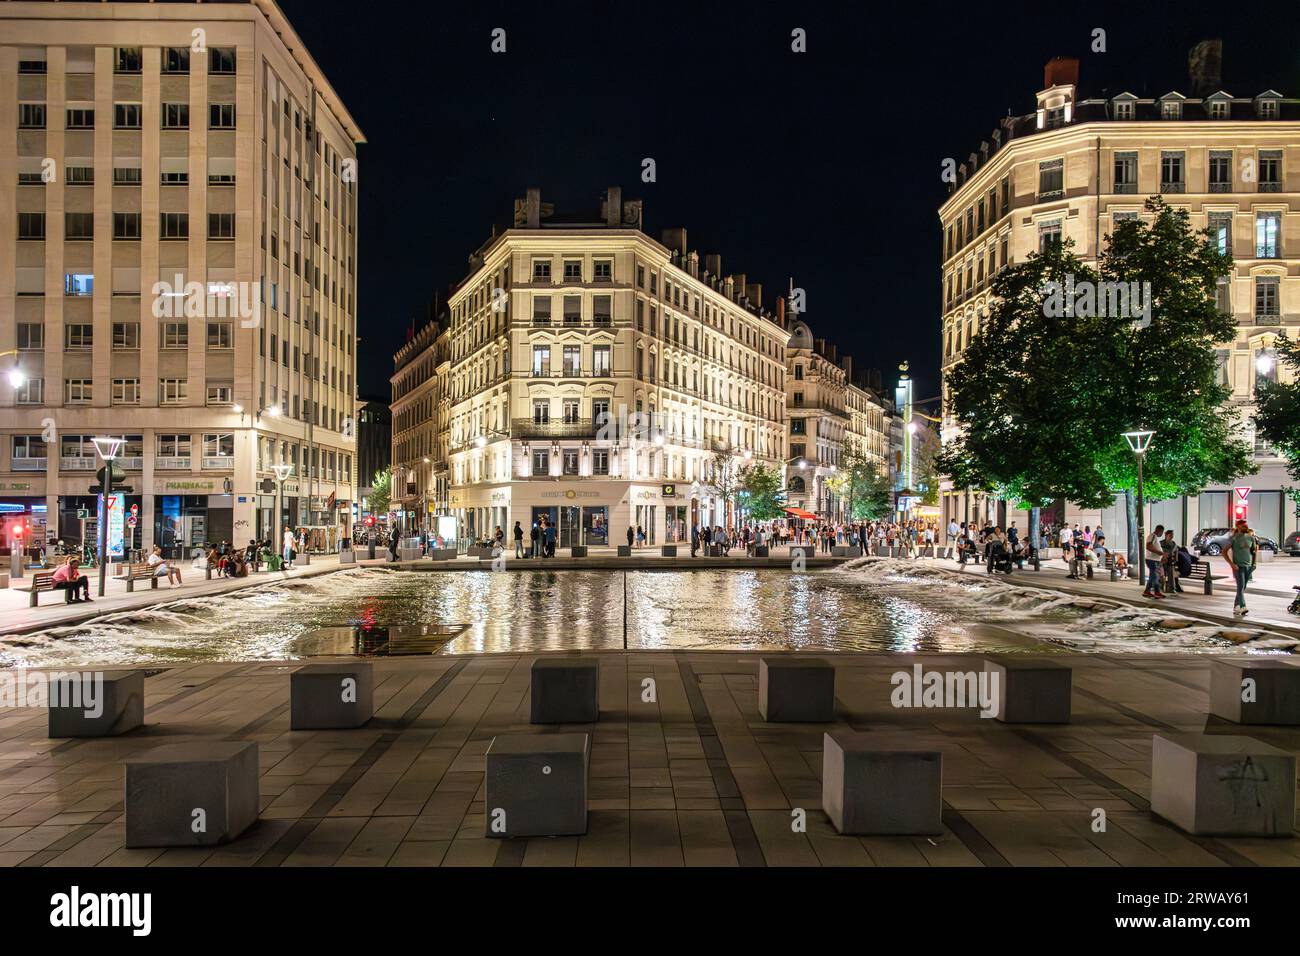 Nachtfoto des Place de la Republique im 2. Arrondissement von Lyon. Stockfoto